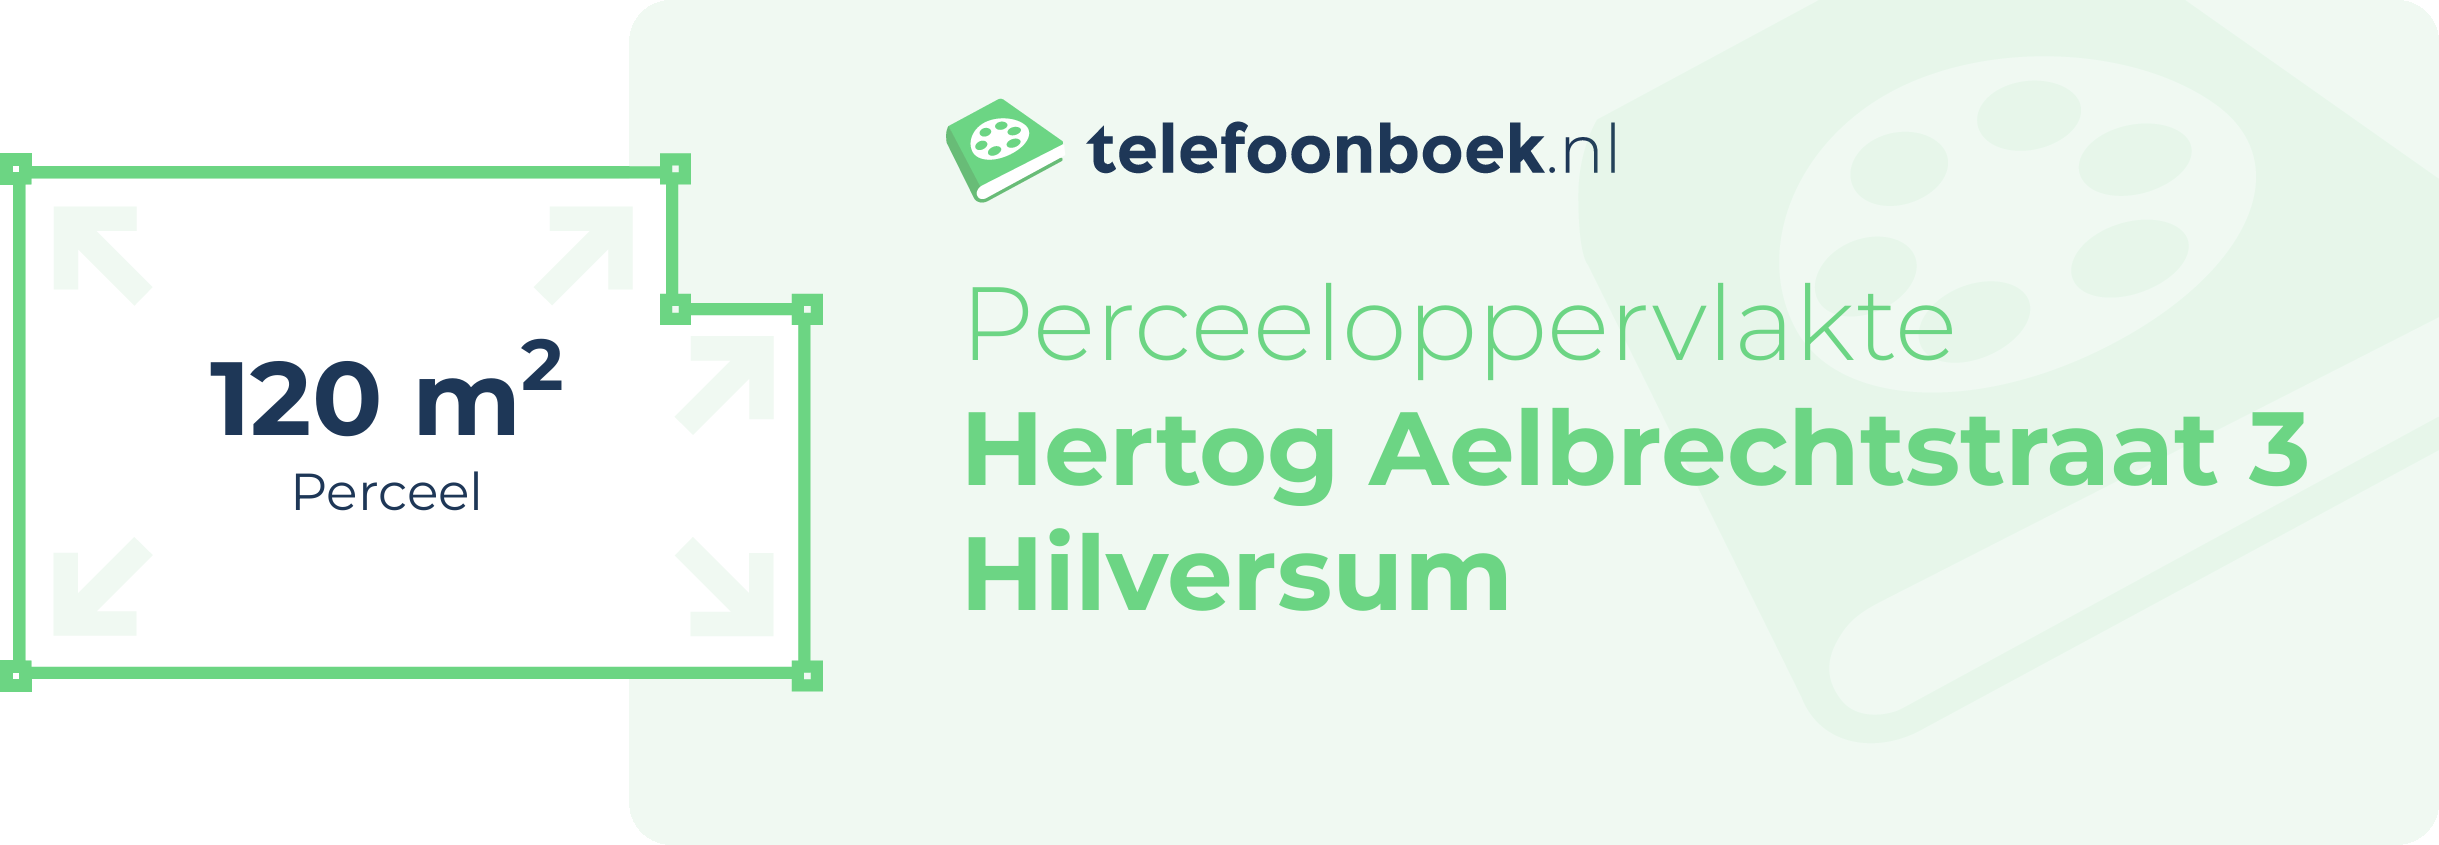 Perceeloppervlakte Hertog Aelbrechtstraat 3 Hilversum